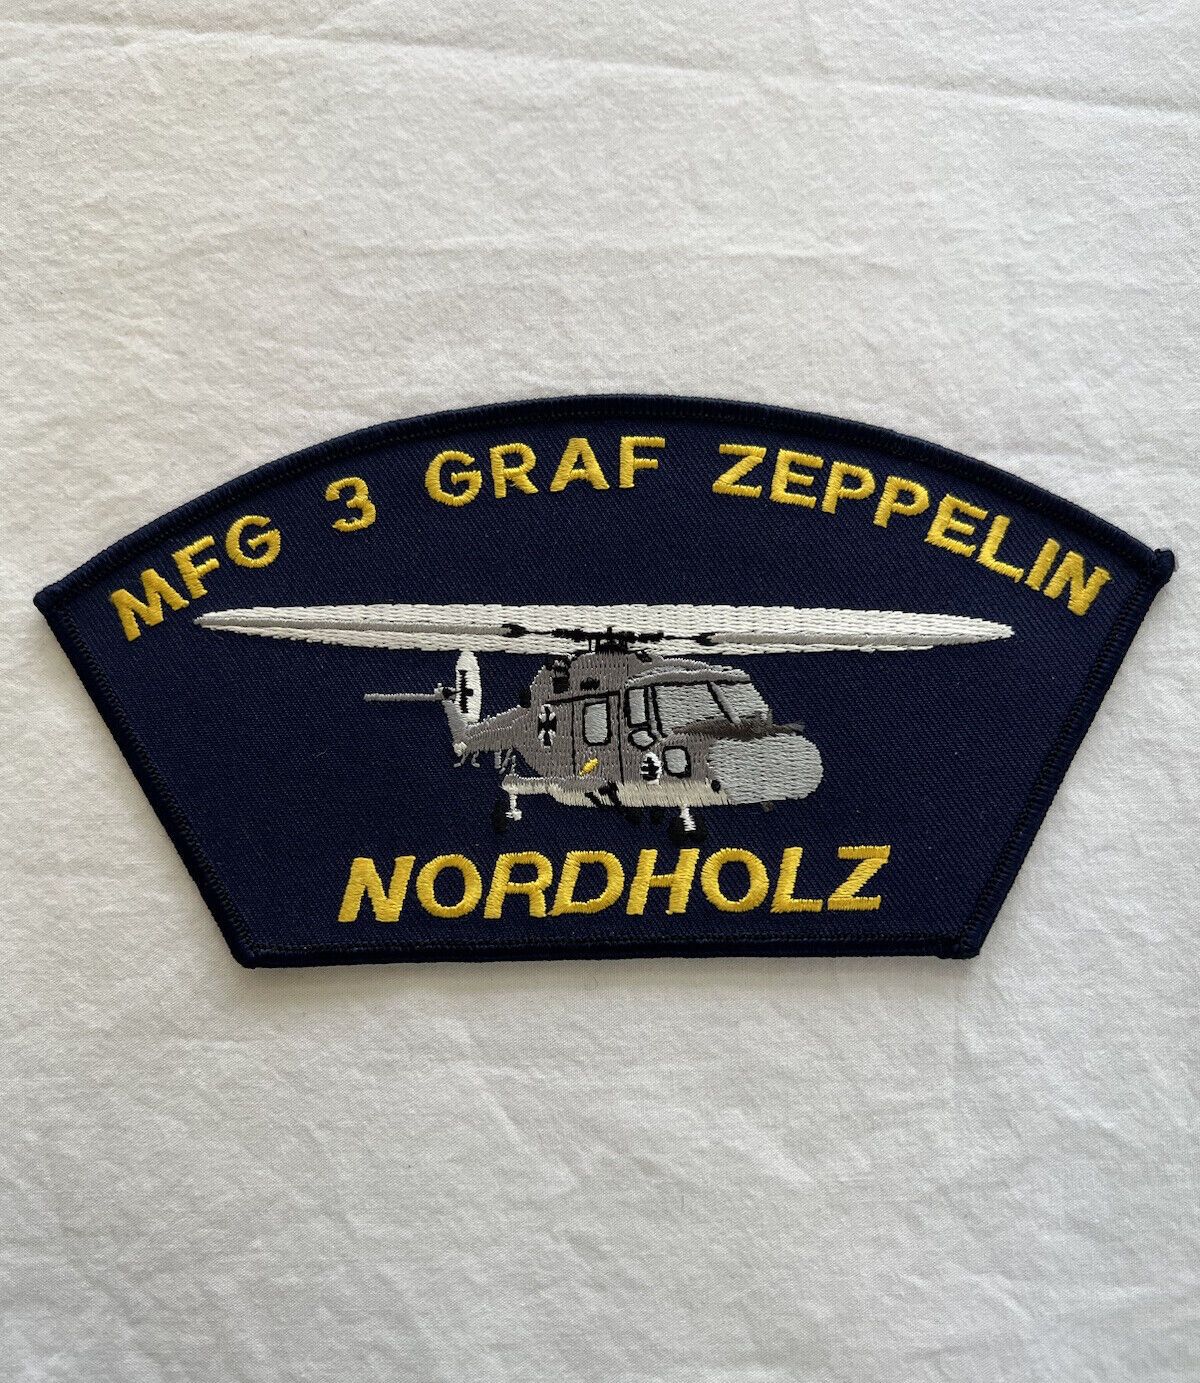 VTG Germany MFG 3 GRAF ZEPPELIN NORDHOLZ 6.9’x 3.2’ Patch Brand New